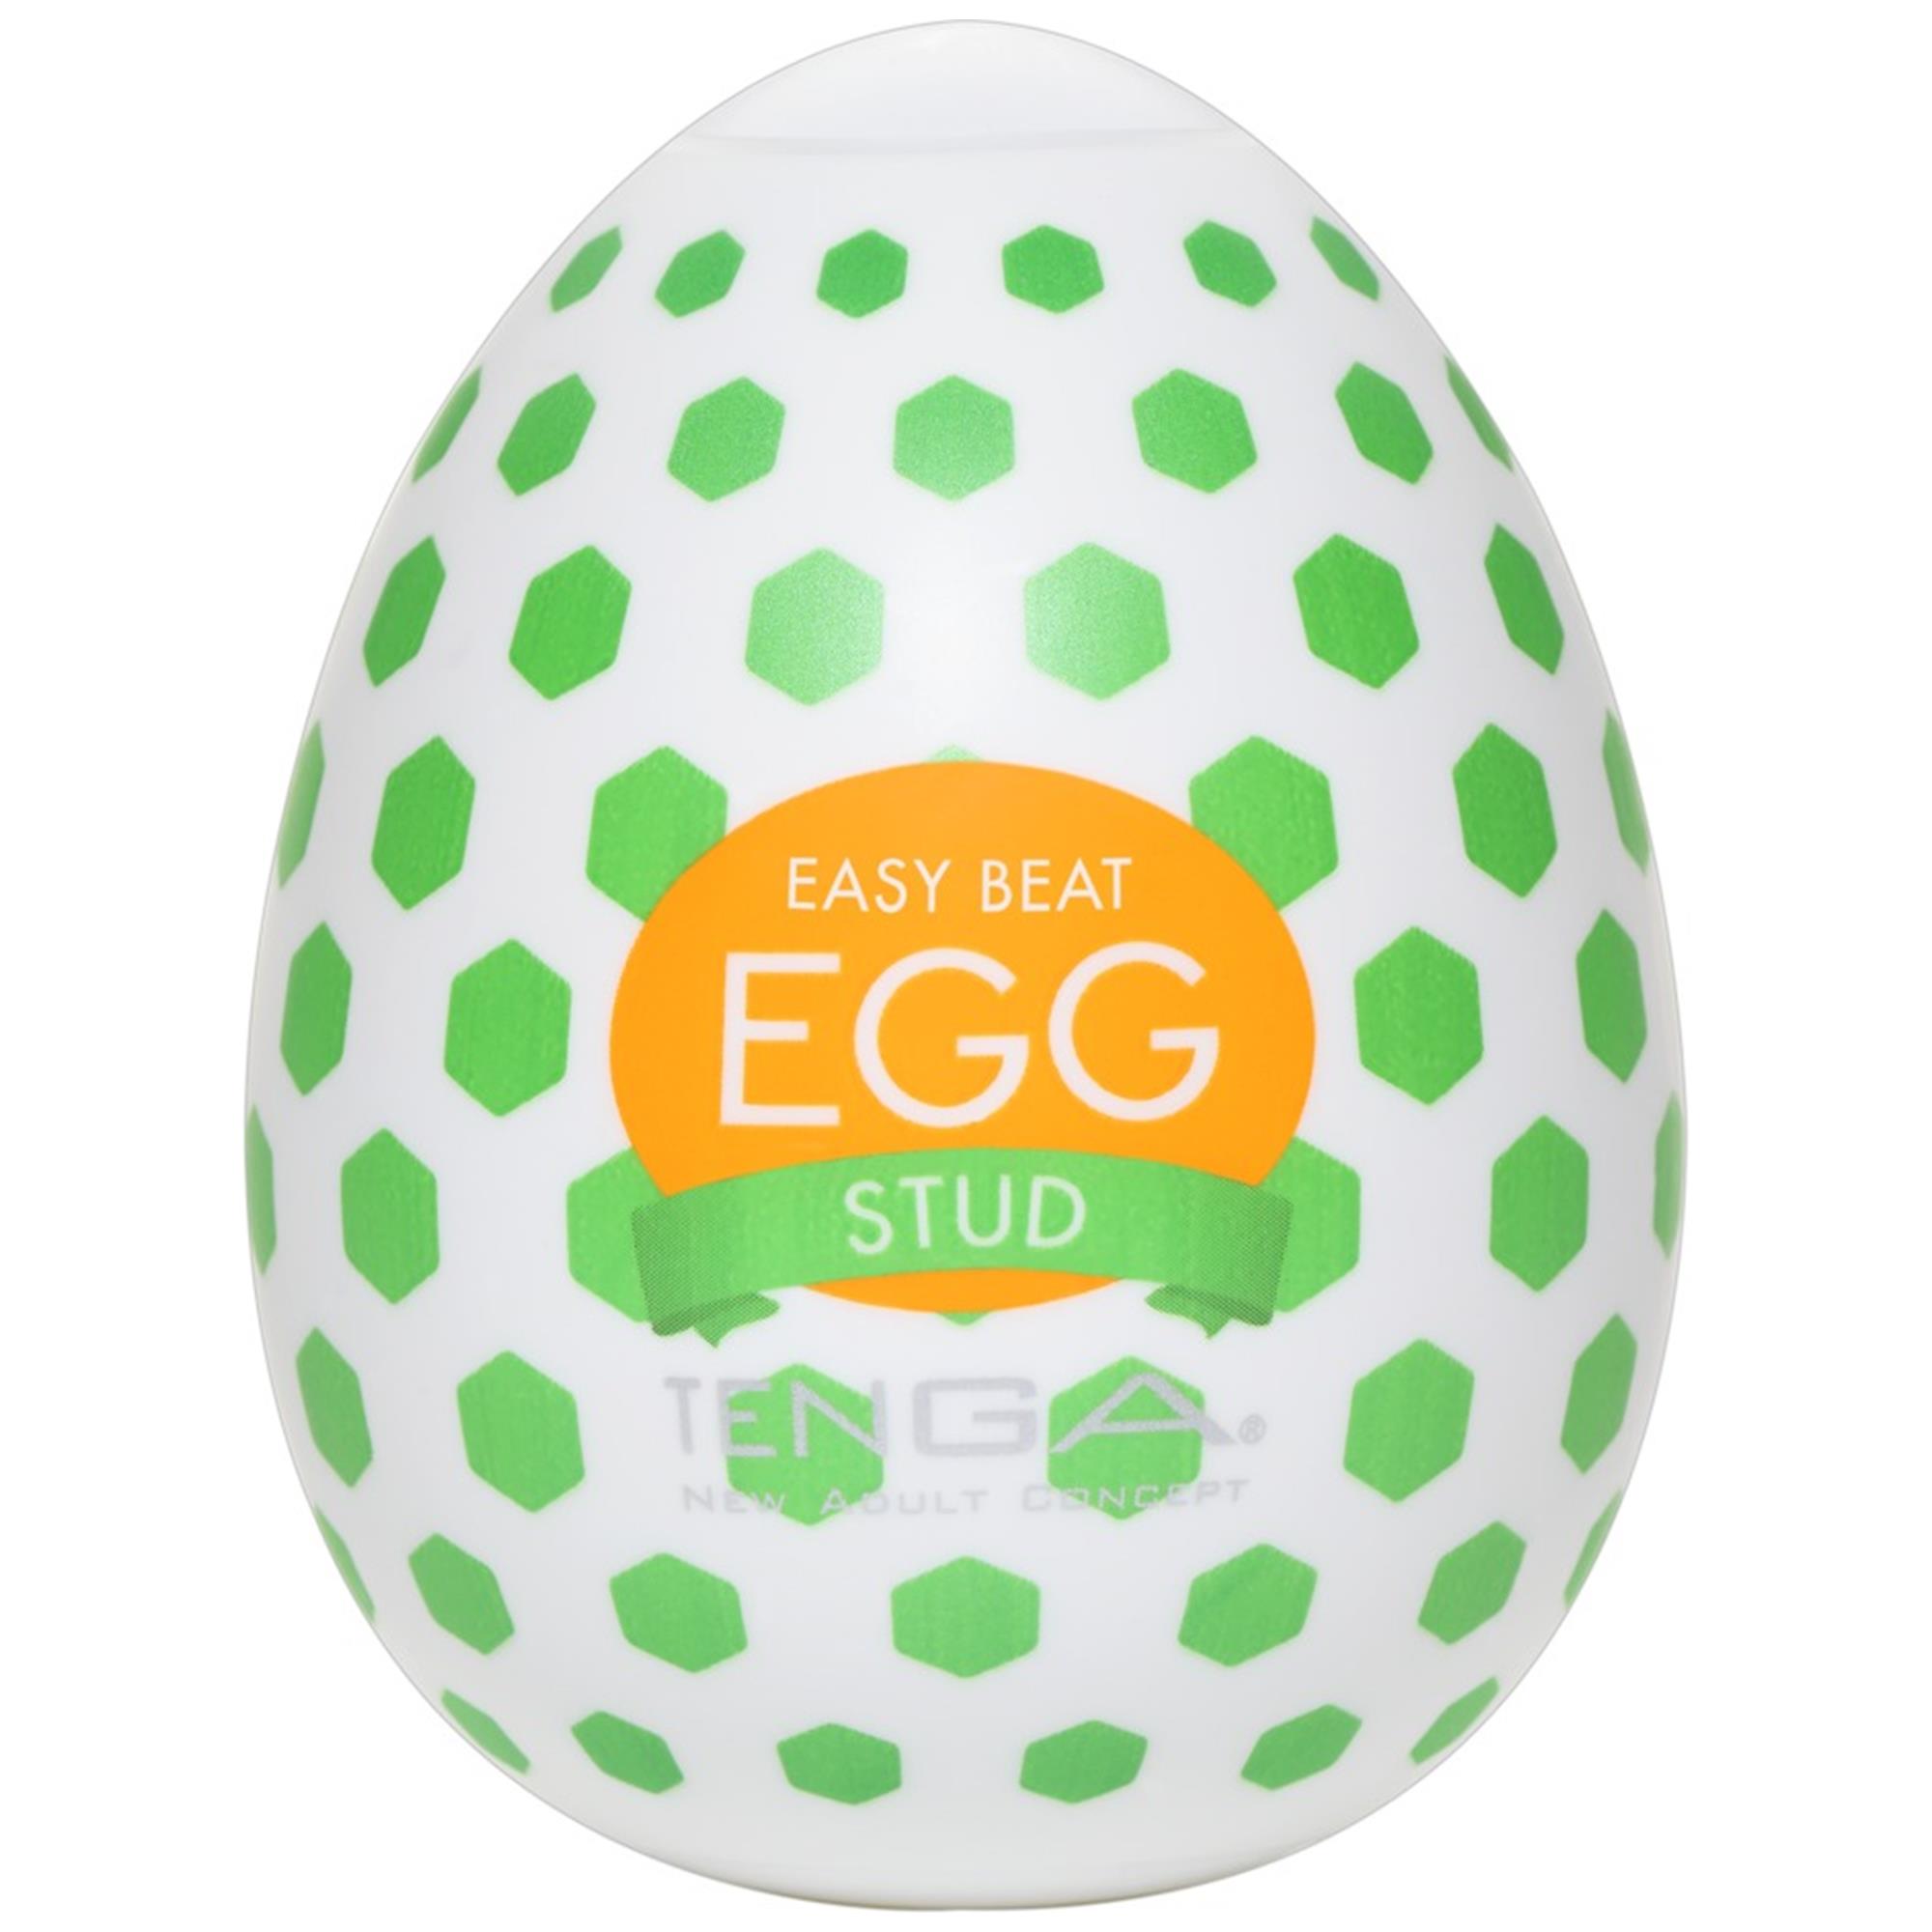 Tenga Egg Stud | Lösvagina | Intimast